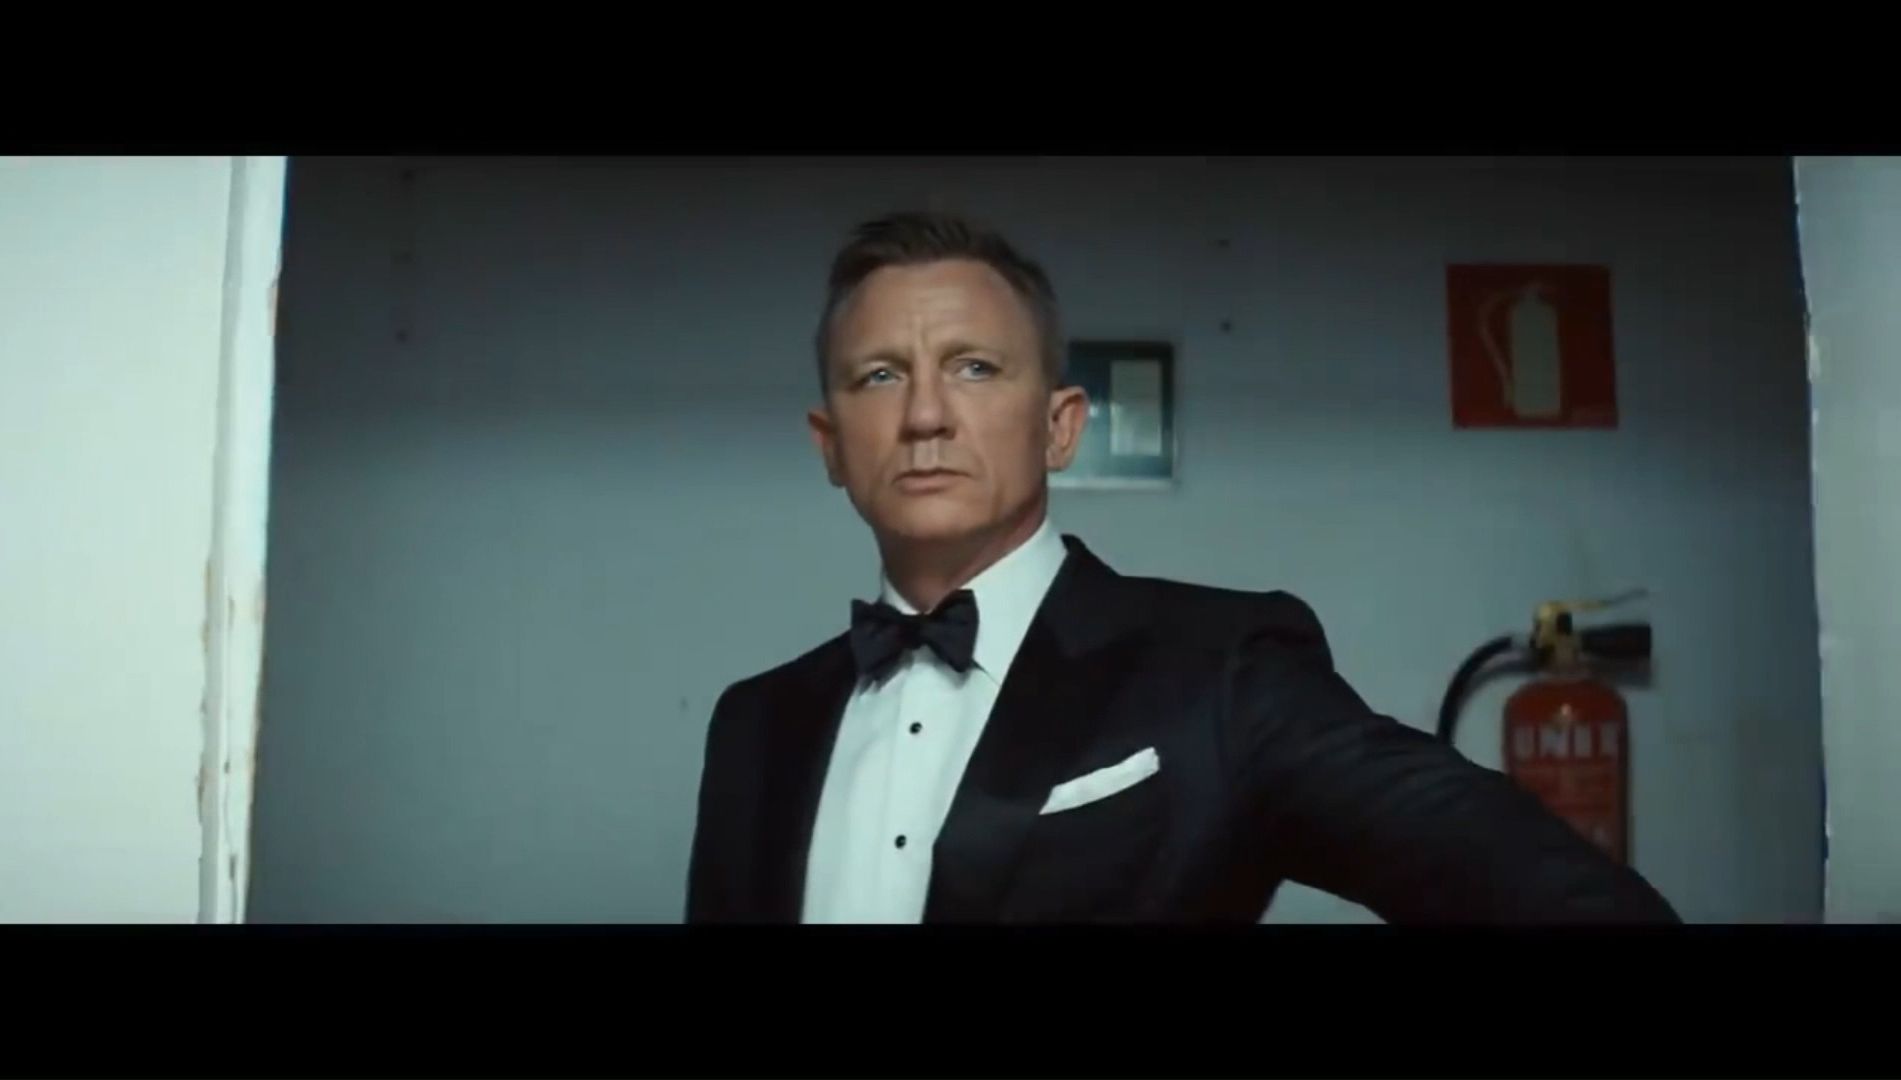 007创意广告《永远的詹姆斯·邦德》| 丹尼尔·克雷格 X 喜力